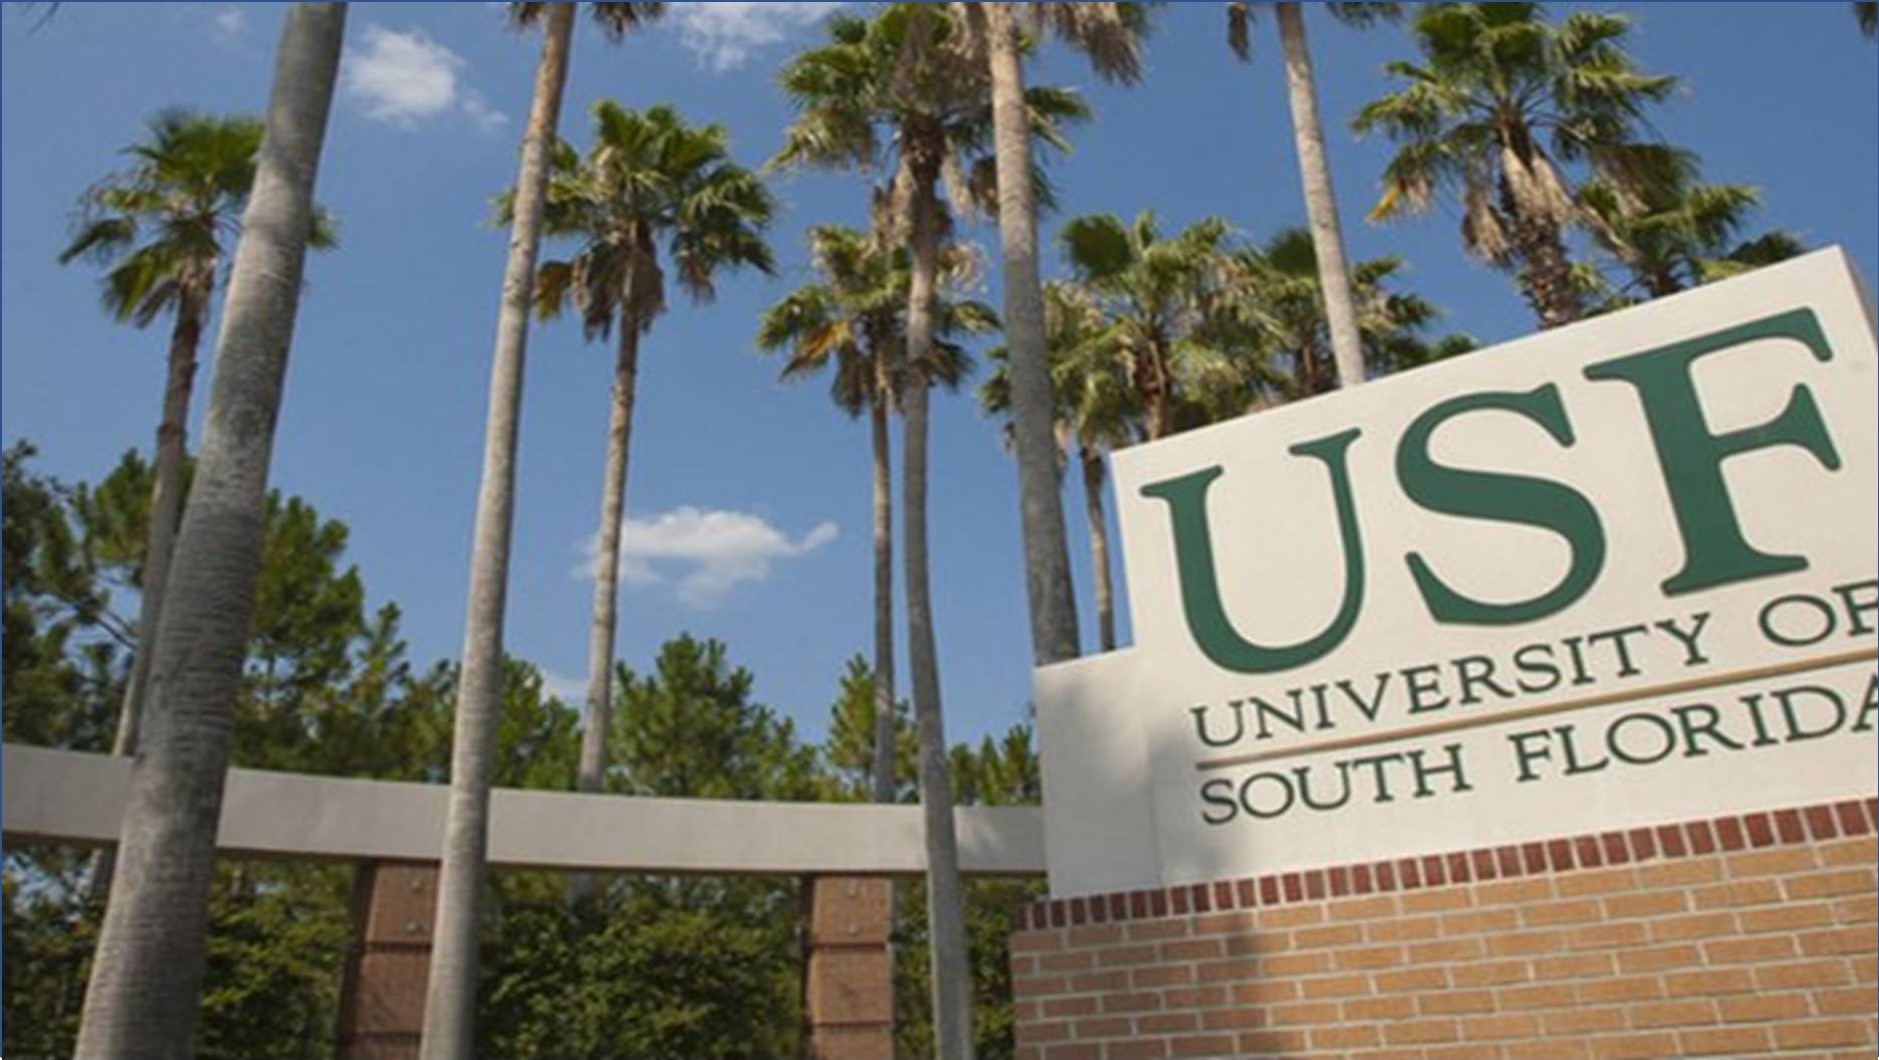 جامعة جنوب فلوريدا الكويت تعلن عن وظائف جديدة شاغرة